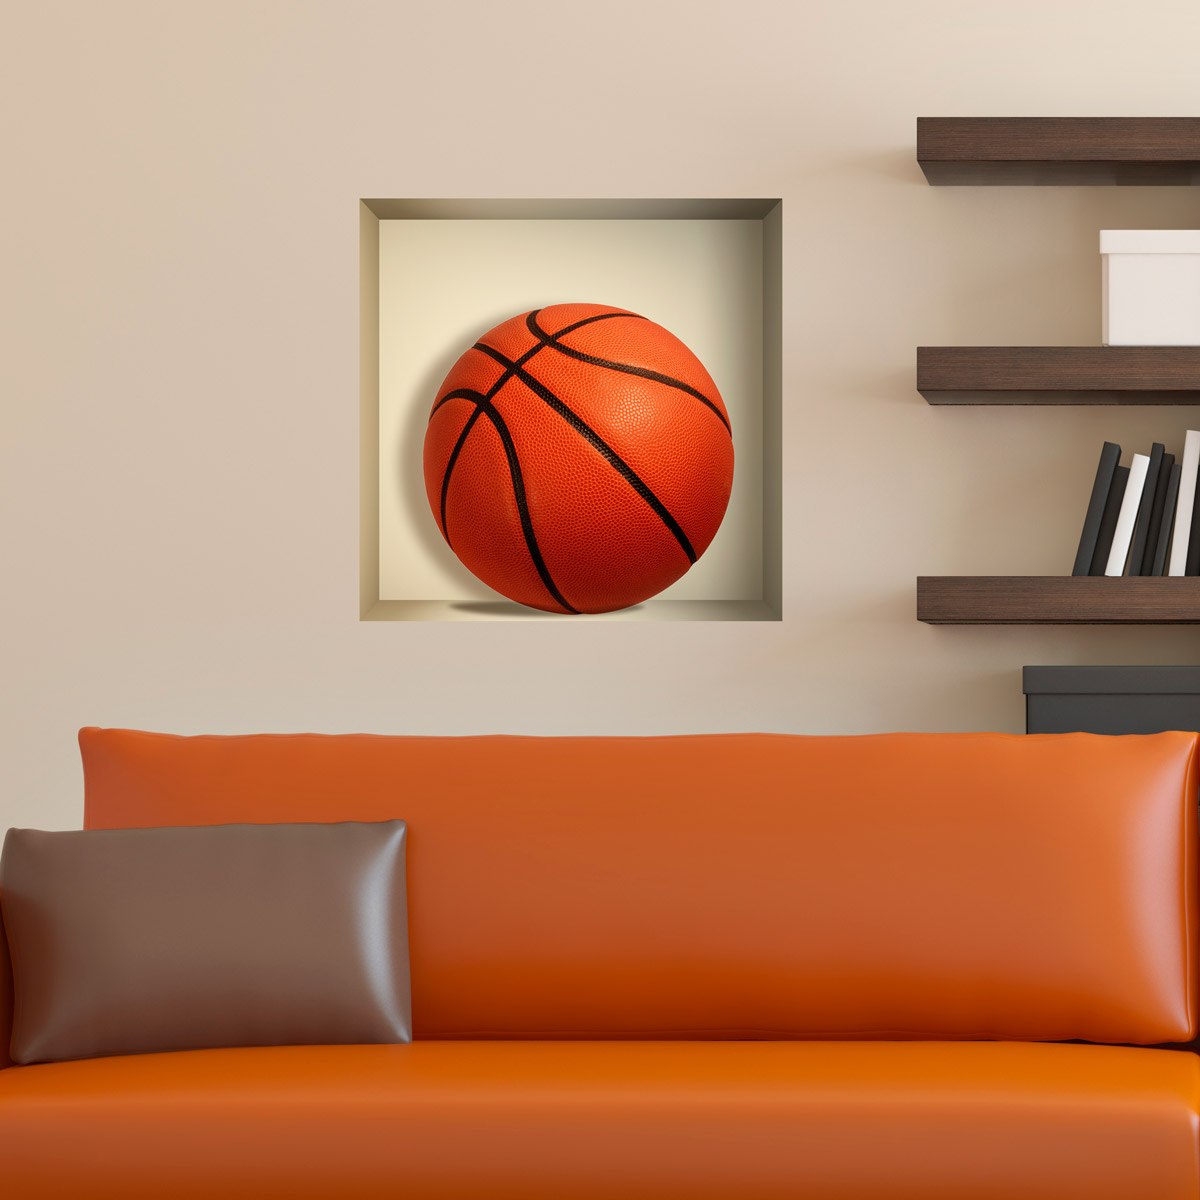 Adesivi Murali: Sfera di pallacanestro nicchia